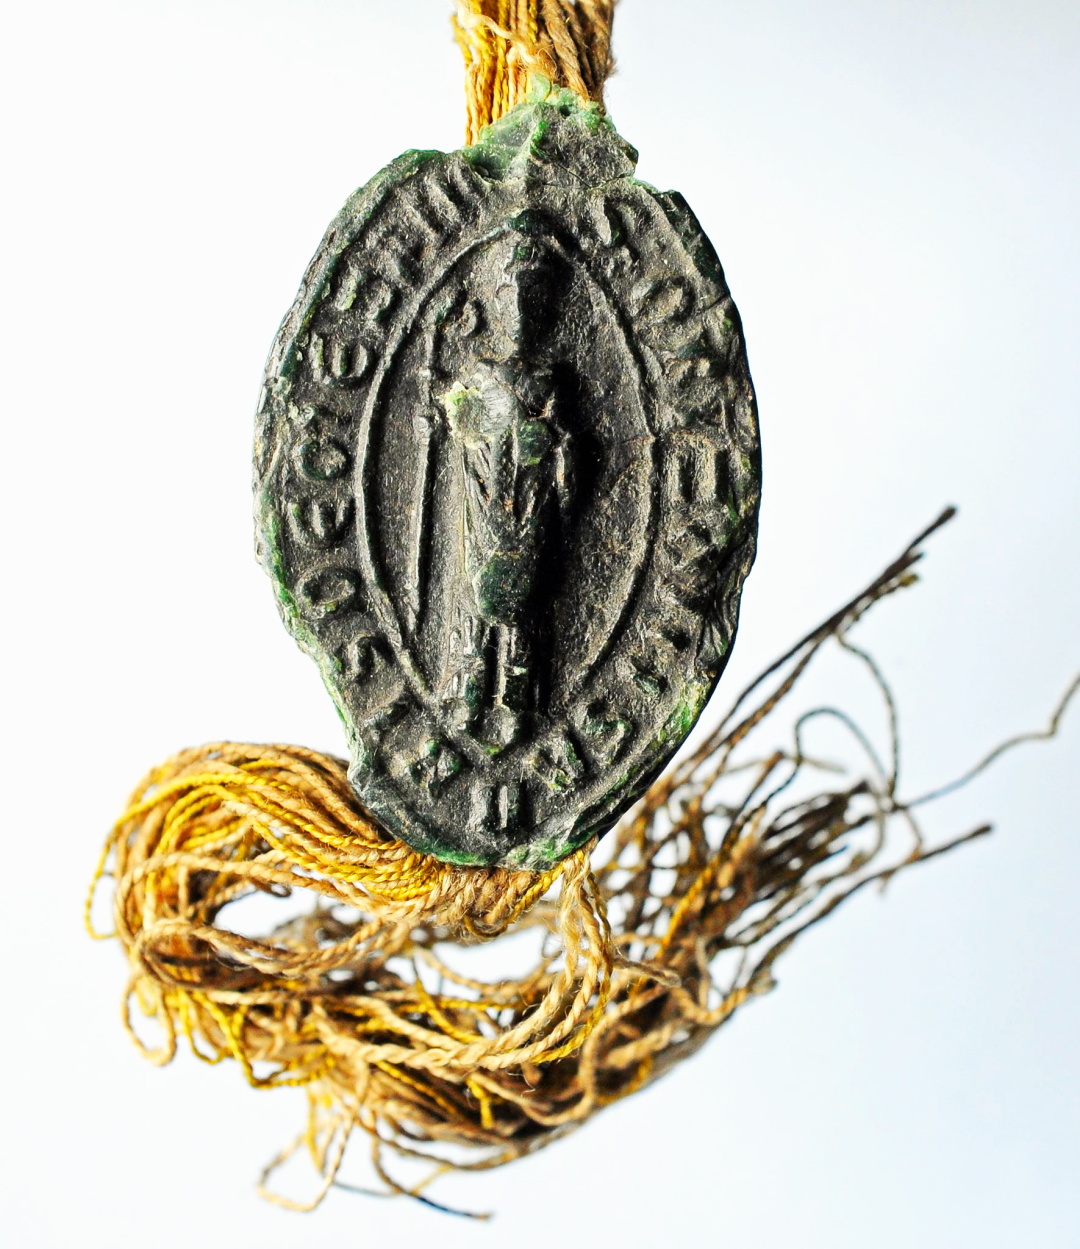 Печатка абата Оппізо із Меццани, котрий наприкінці1253 р. коронував Данила Романовича у місті Дорогичині